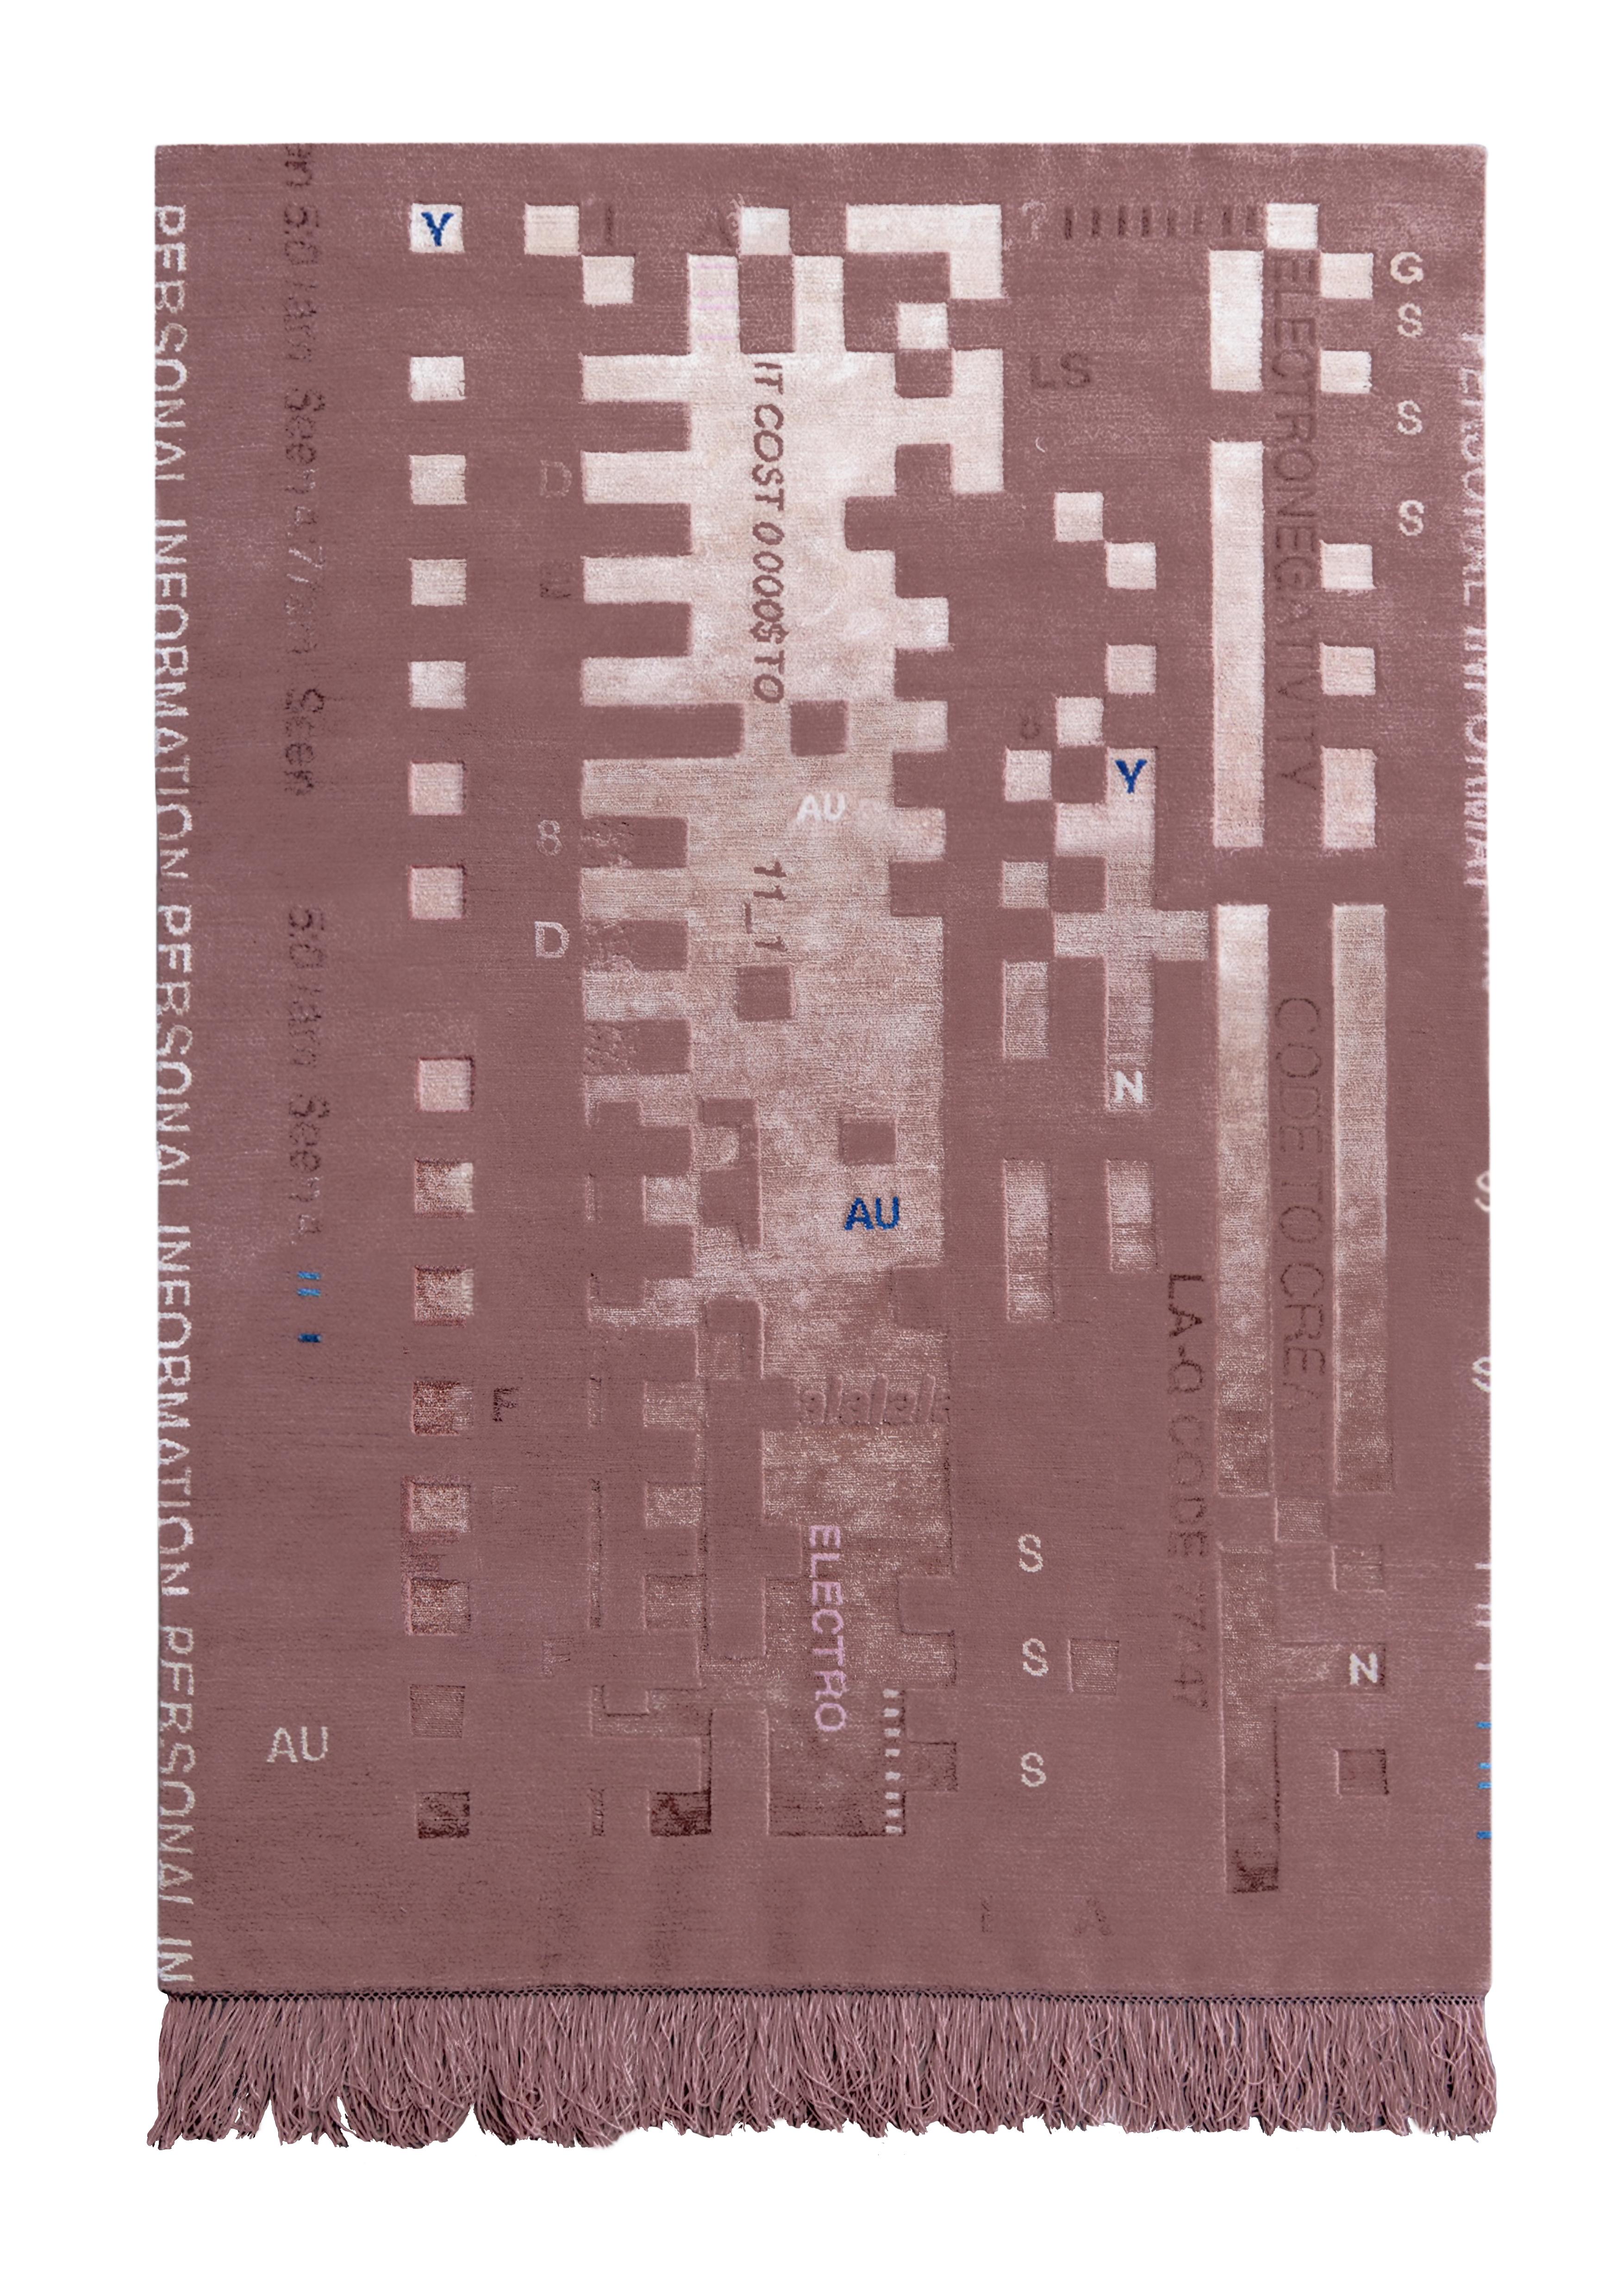 00.05 handgeknüpfter teppich von Laroque Studio
Handgeknüpft in Nepal
Abmessungen: 185 x 125 cm
MATERIALIEN: Chinesische Seide/Wolle
Qualität: 150 Knoten / Quadratzoll

Es wäre fast unmöglich, nur eine Idee zu nennen, die die Collection 00